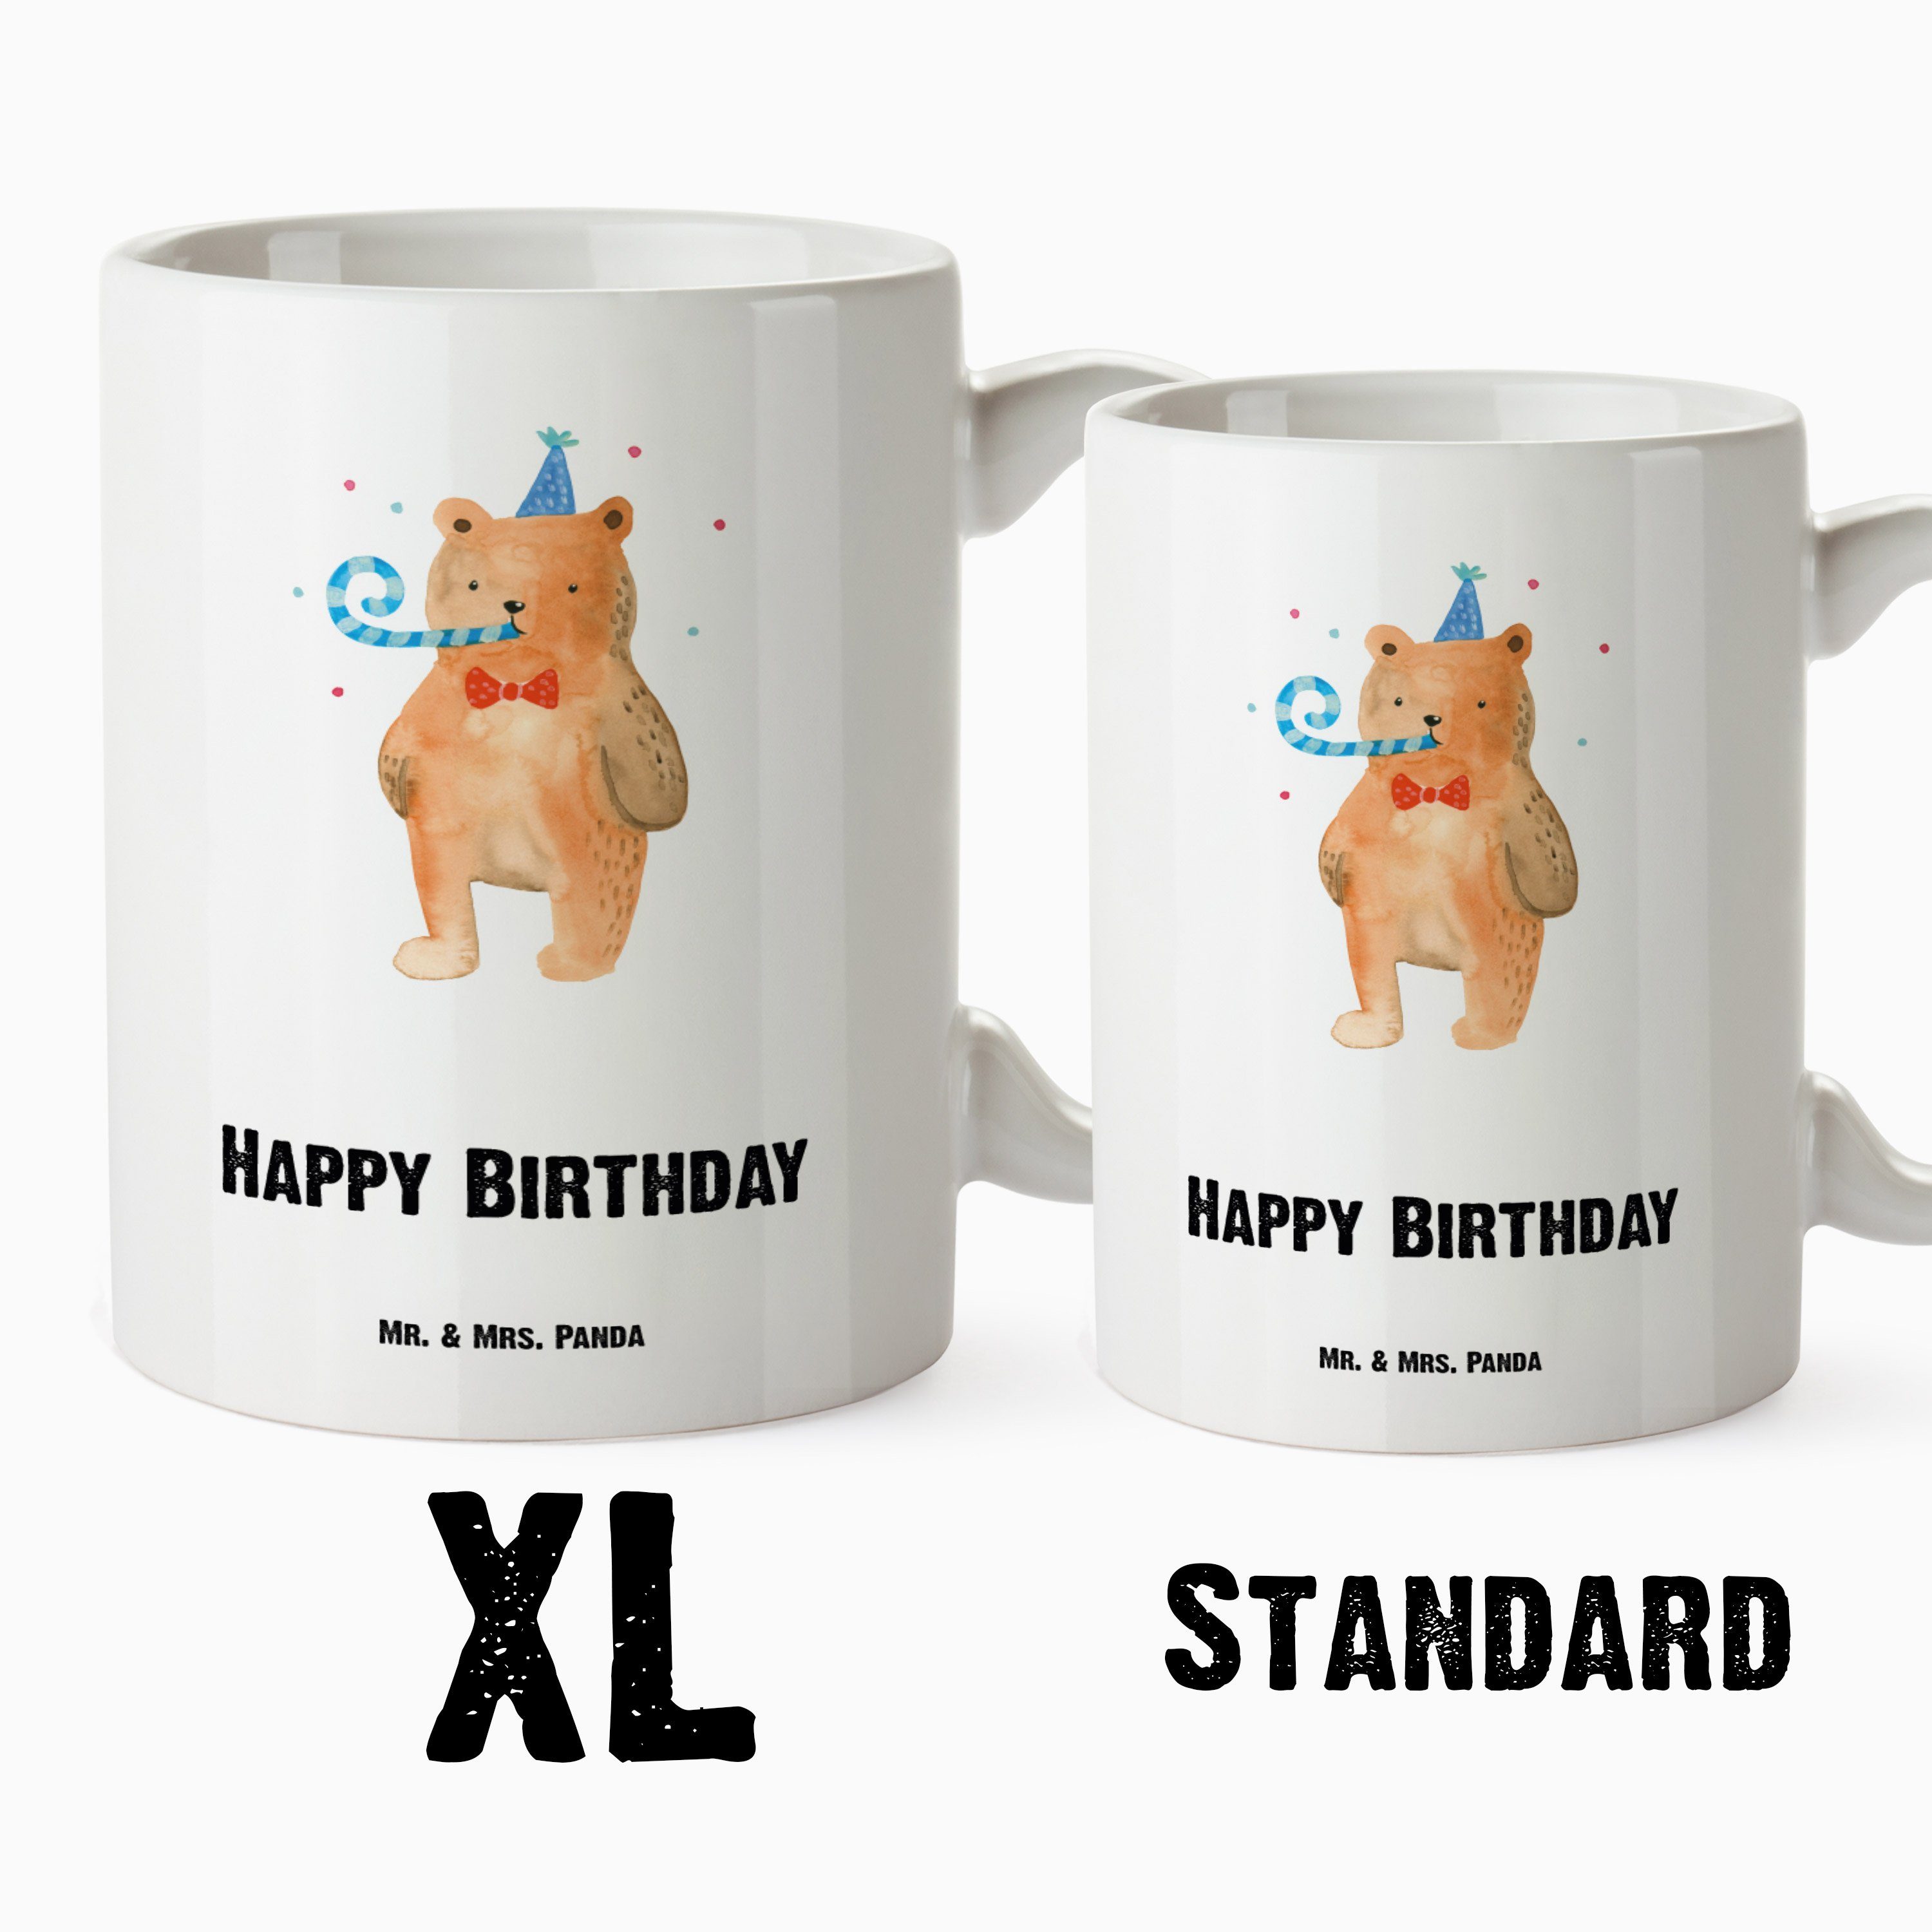 Mr. & Tasse Becher, Panda - Keramik Weiß Geschenk, Teddy, XL Bär Glückwu, - Geburtstag, Mrs. Tasse XL Birthday